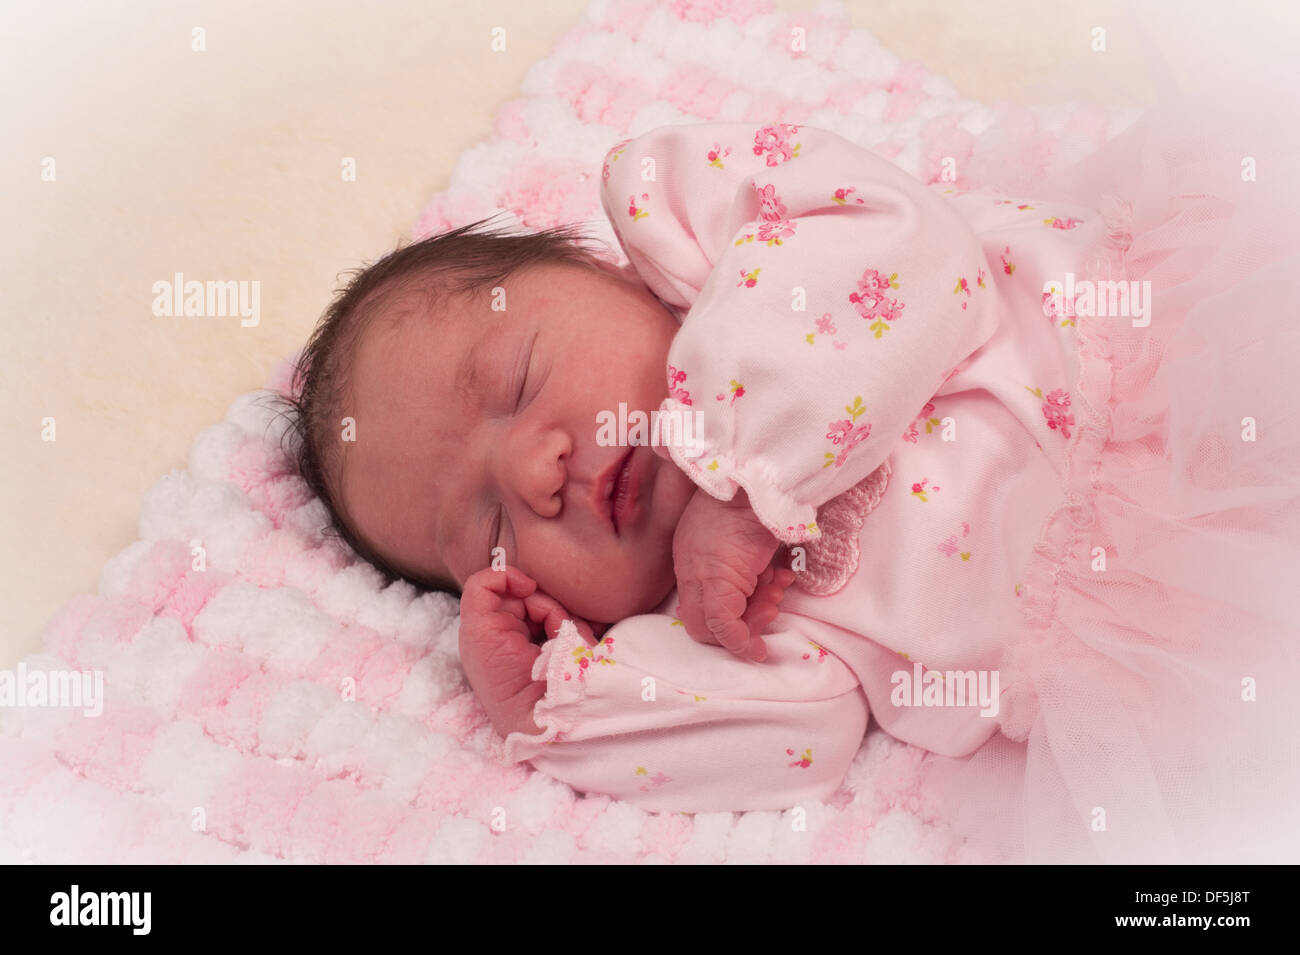 Belle Naissance bebe Fille en rose sur la couverture fait main Photo Stock  - Alamy